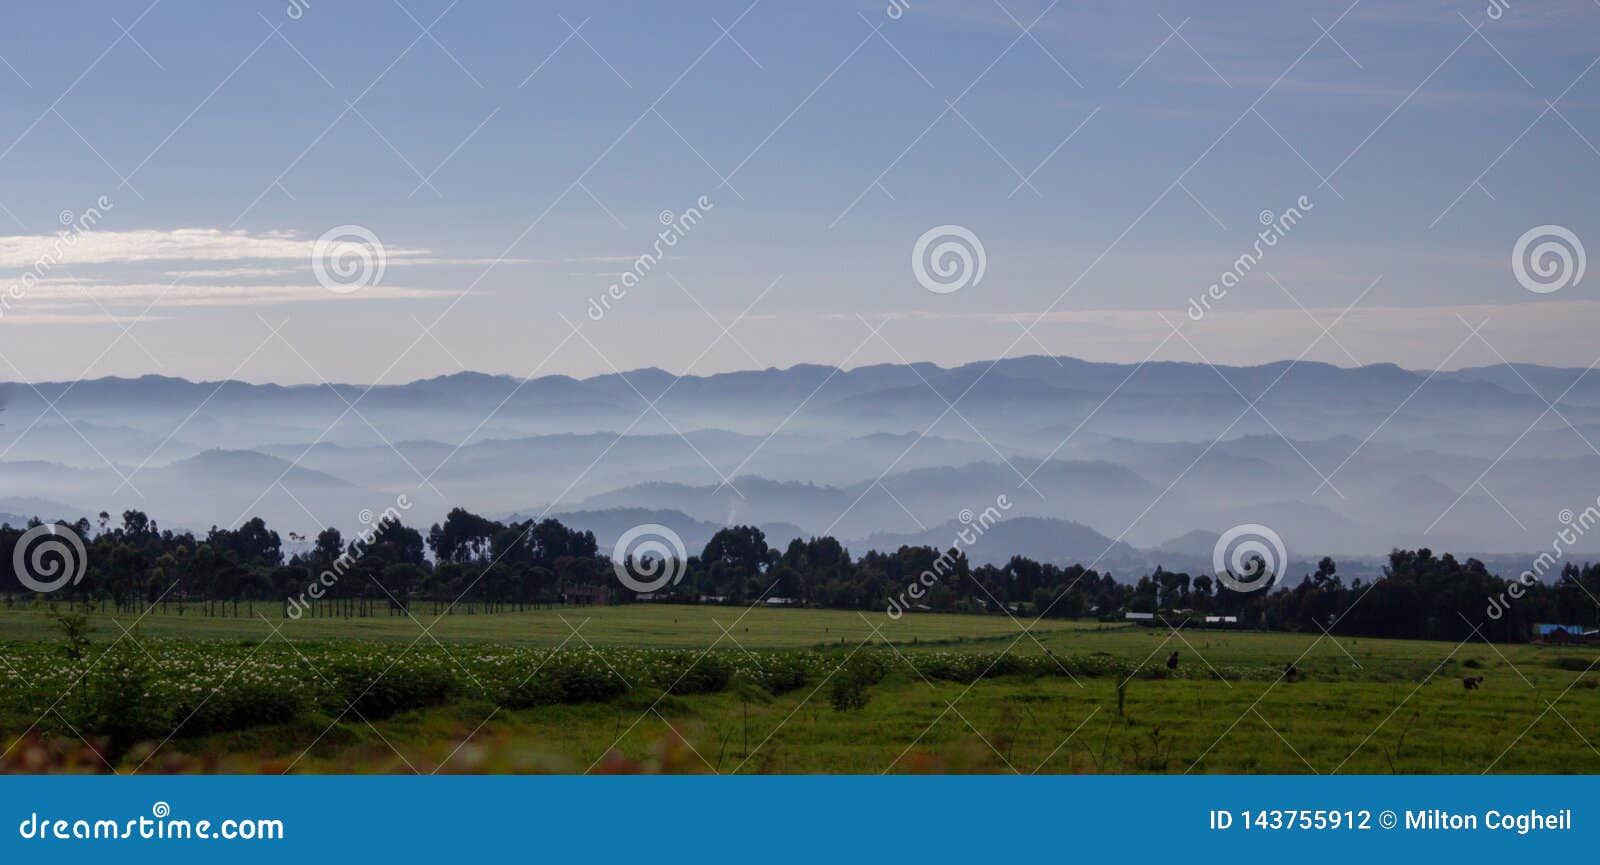 landscape of volcanoes national park, rwanda